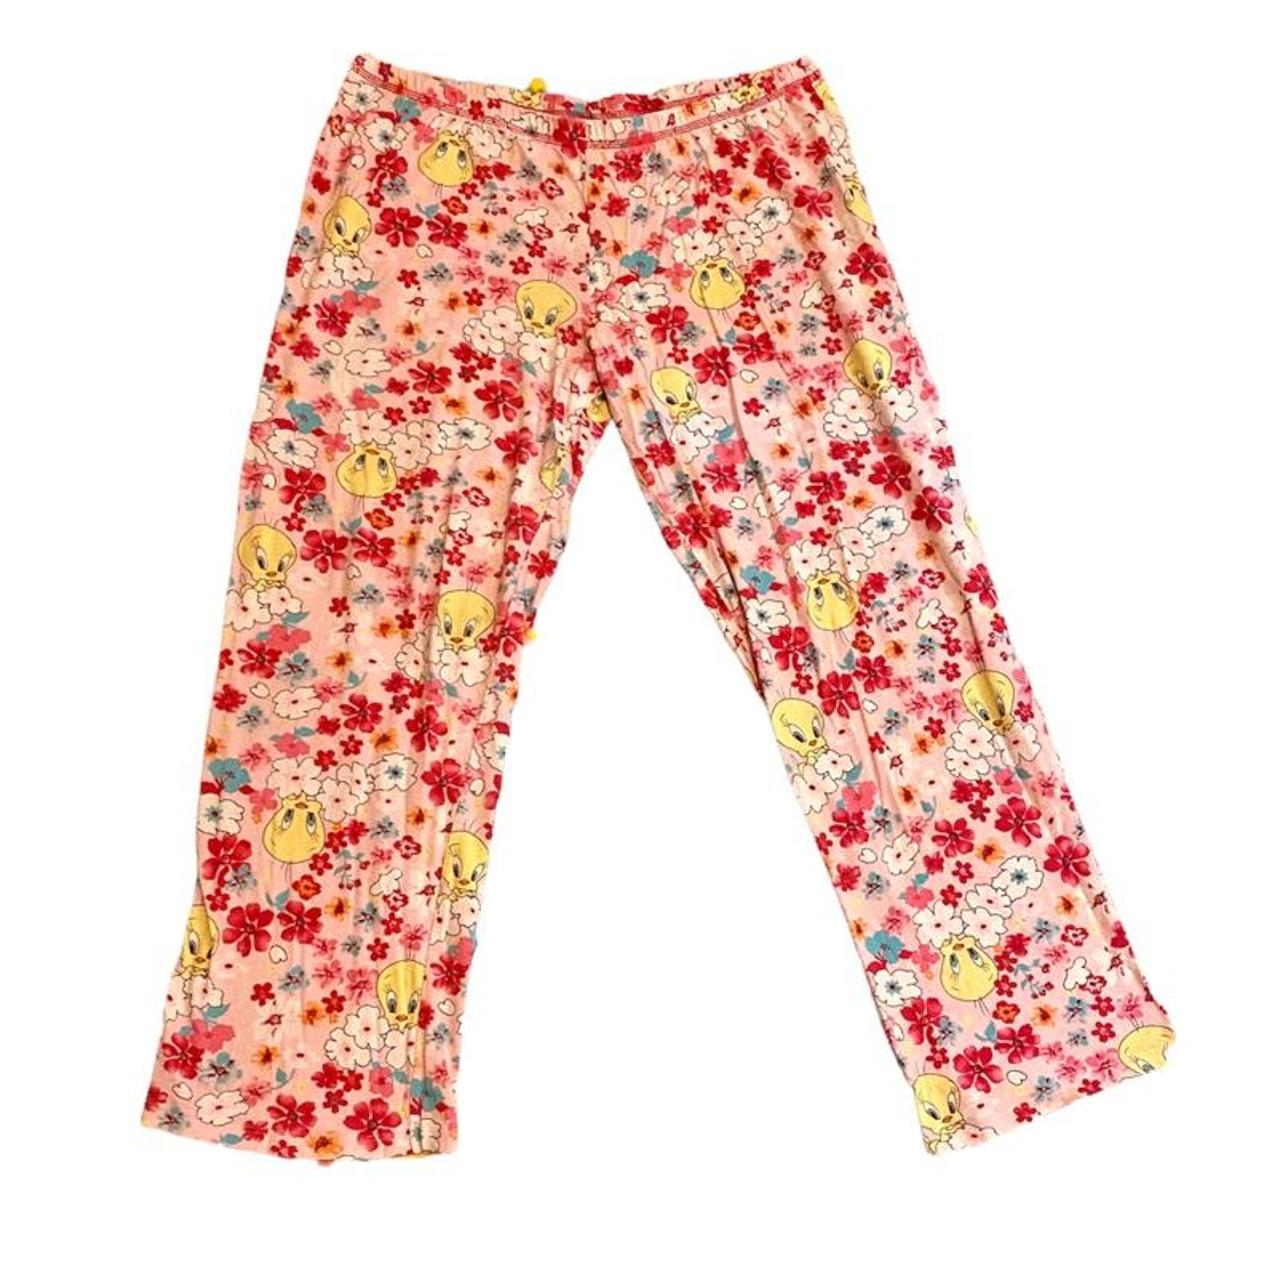 Tweety Bird flower pajama pants 🌺 Super adorable... - Depop